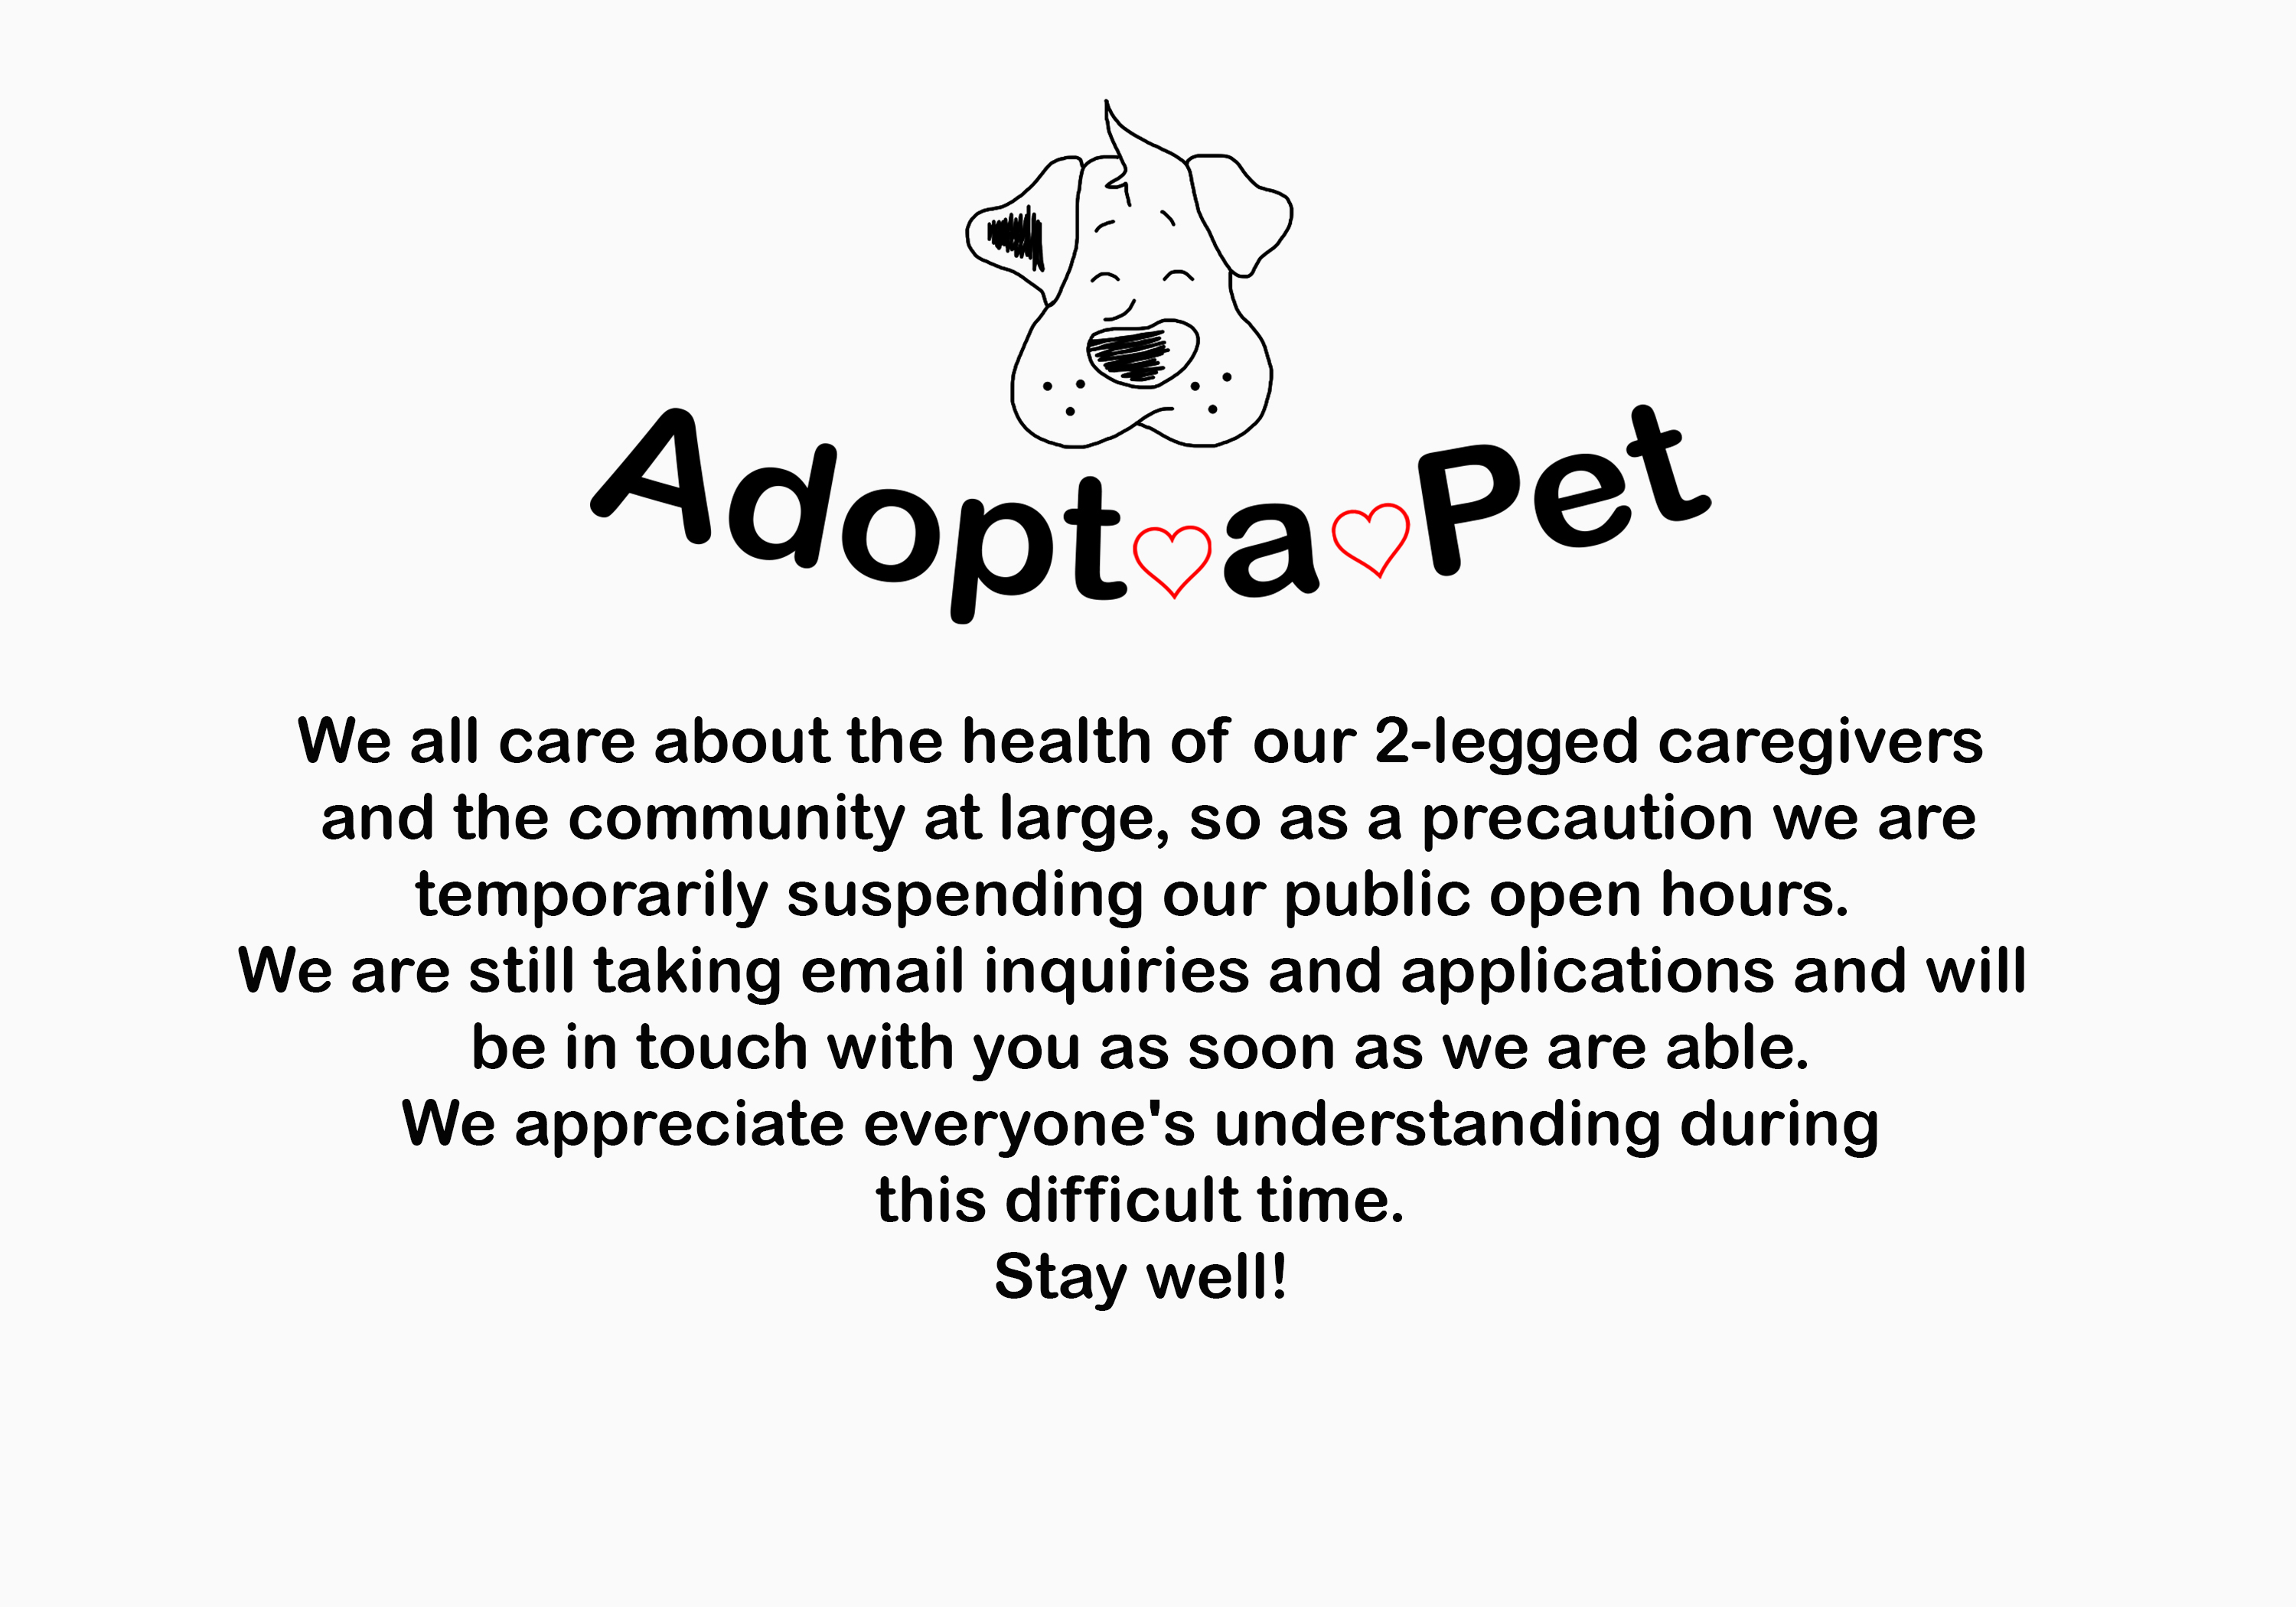 Adopt-A-Pet